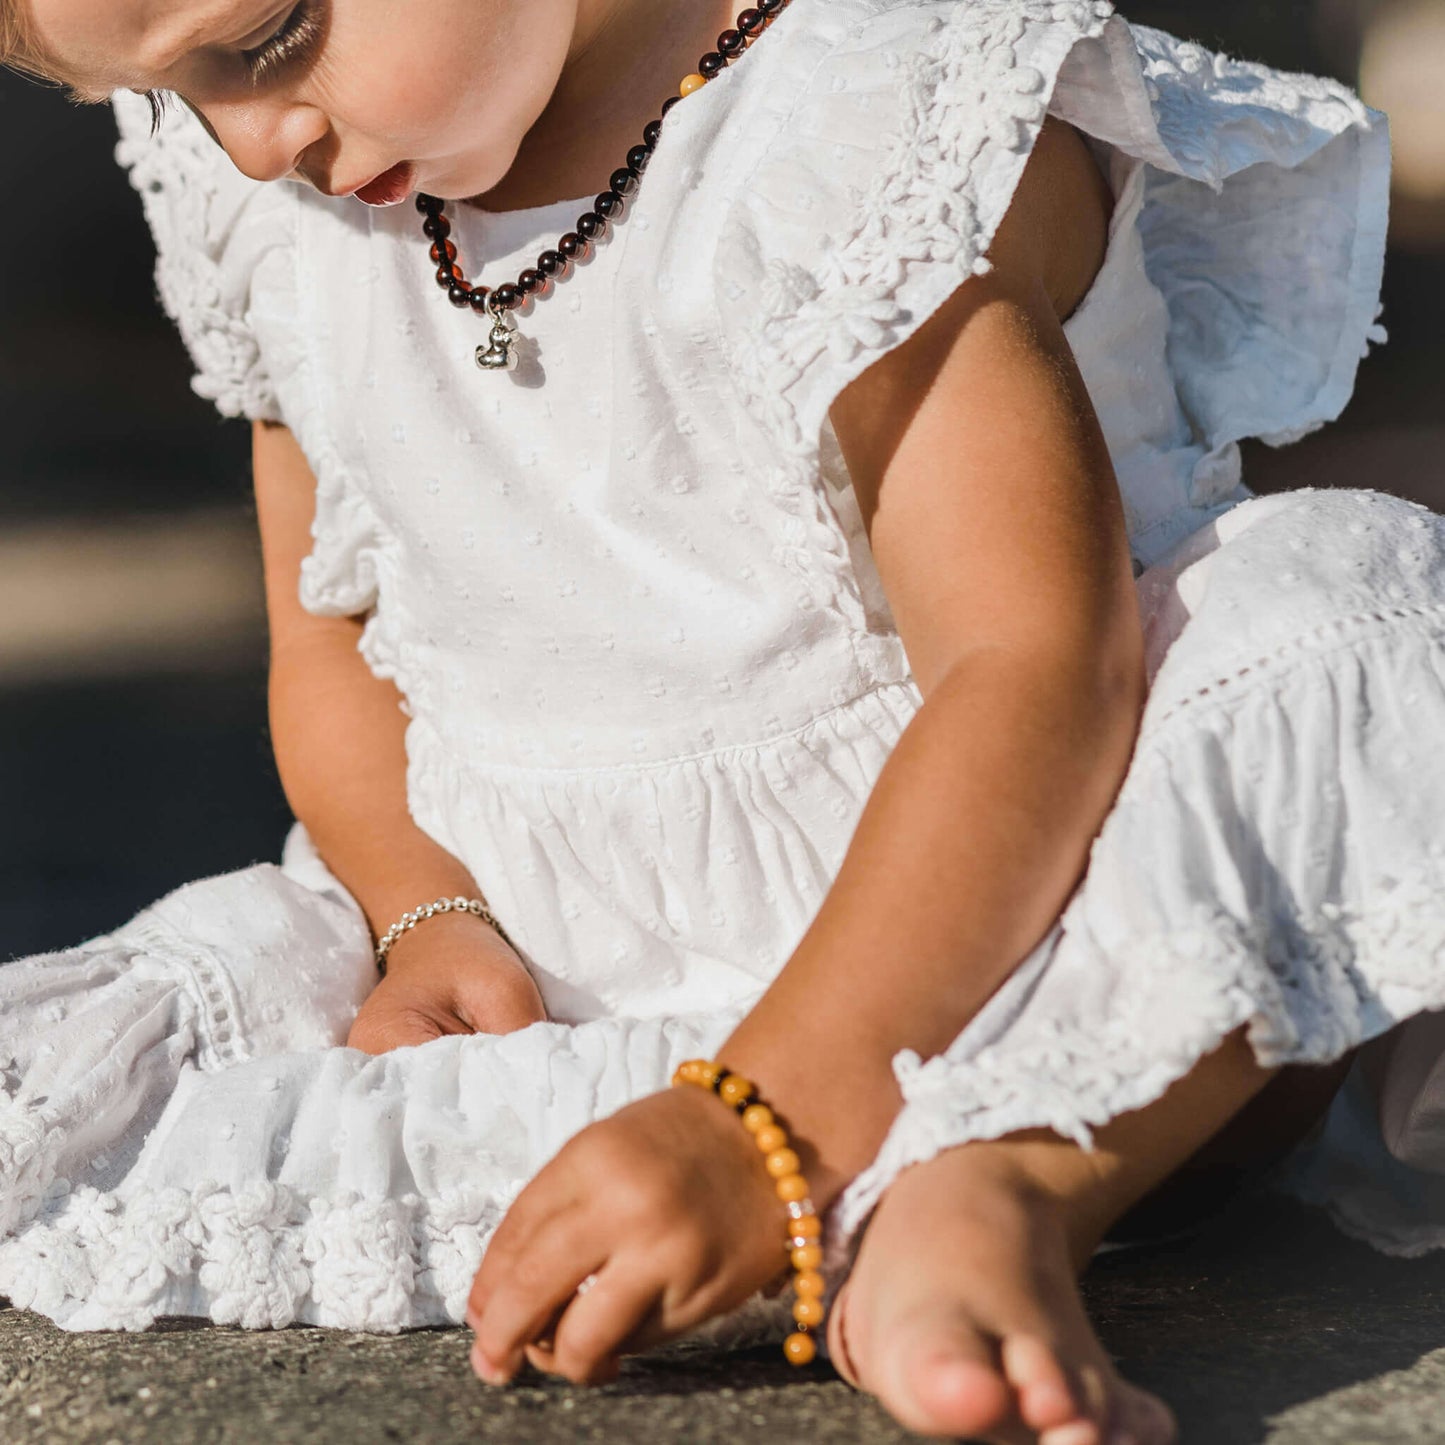 Children's bracelet Little Amber Yellow